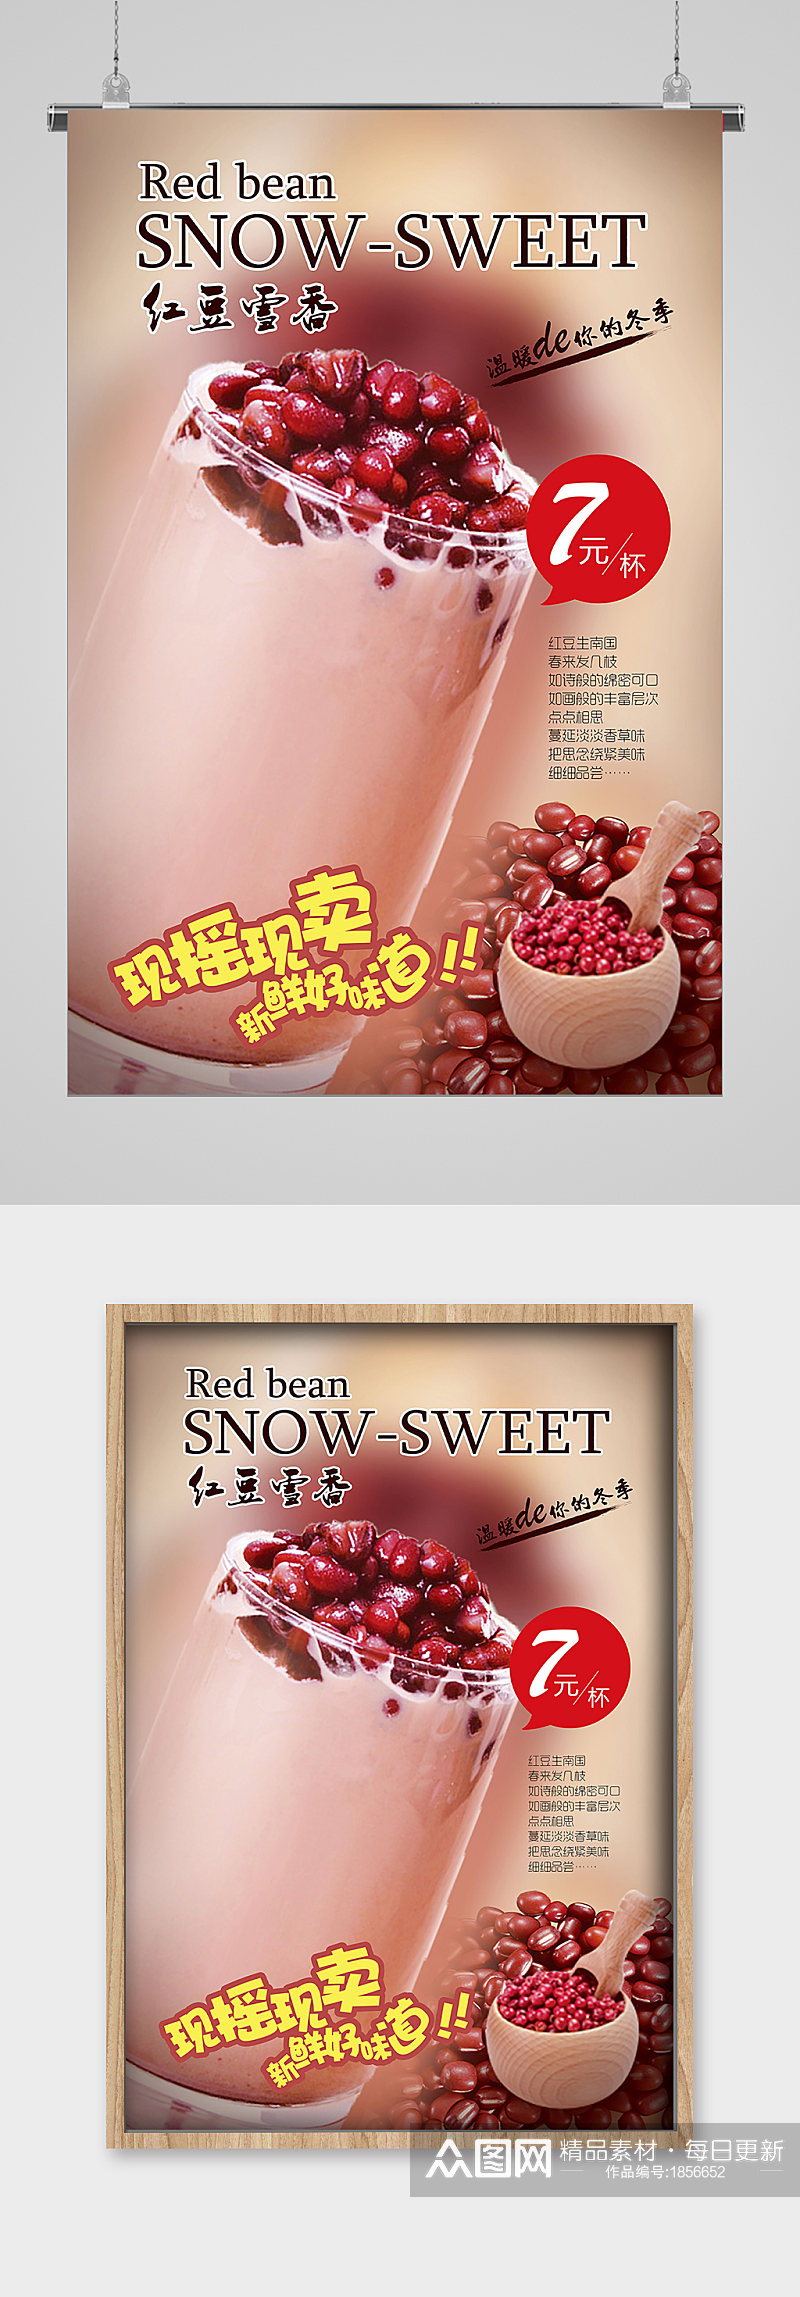 夏日冷饮红豆奶茶宣传海报素材